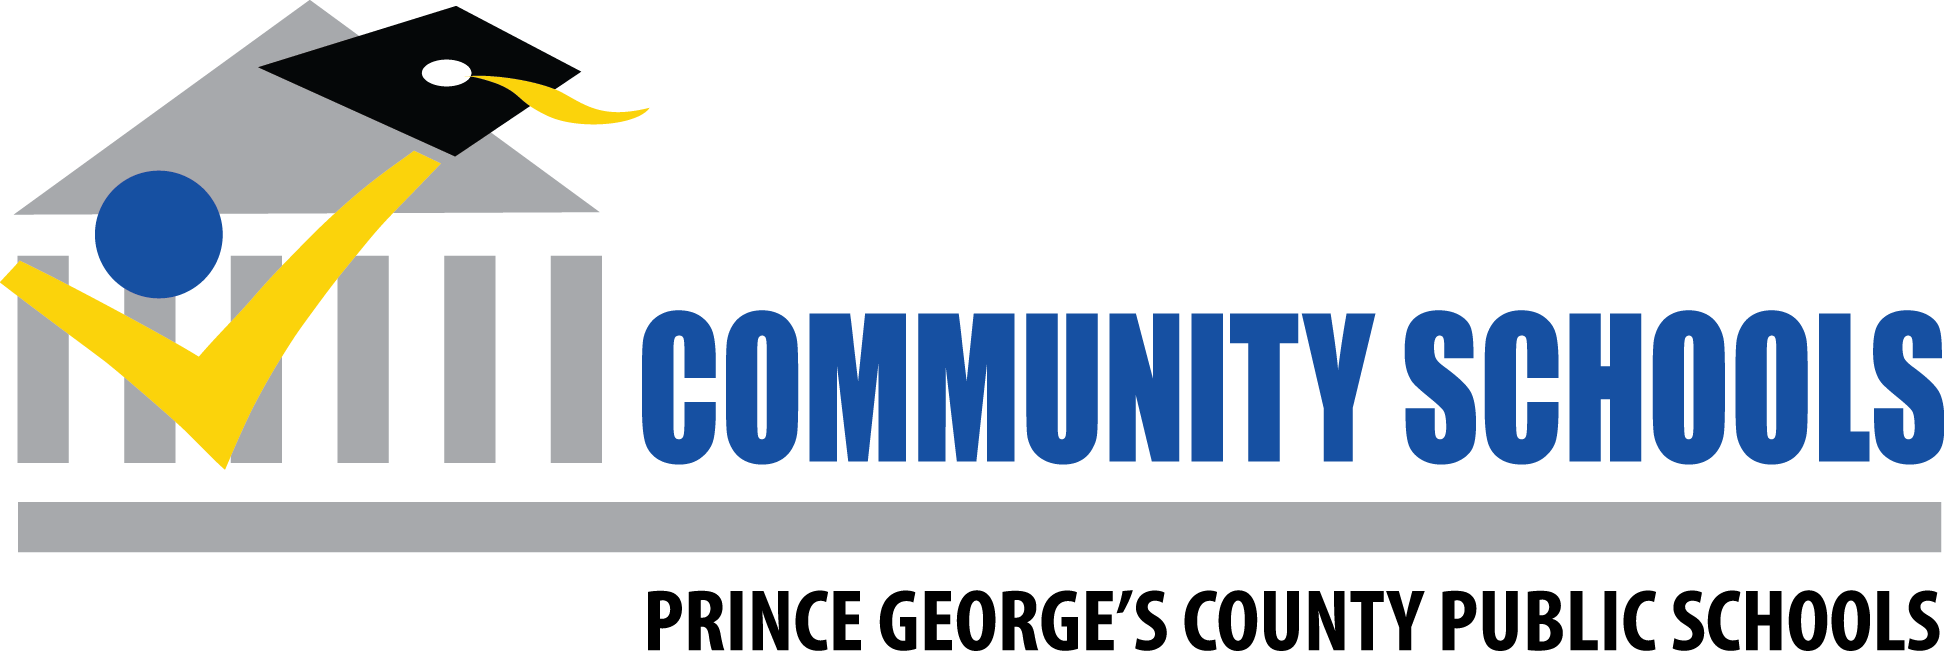 Community-schools-logo.png